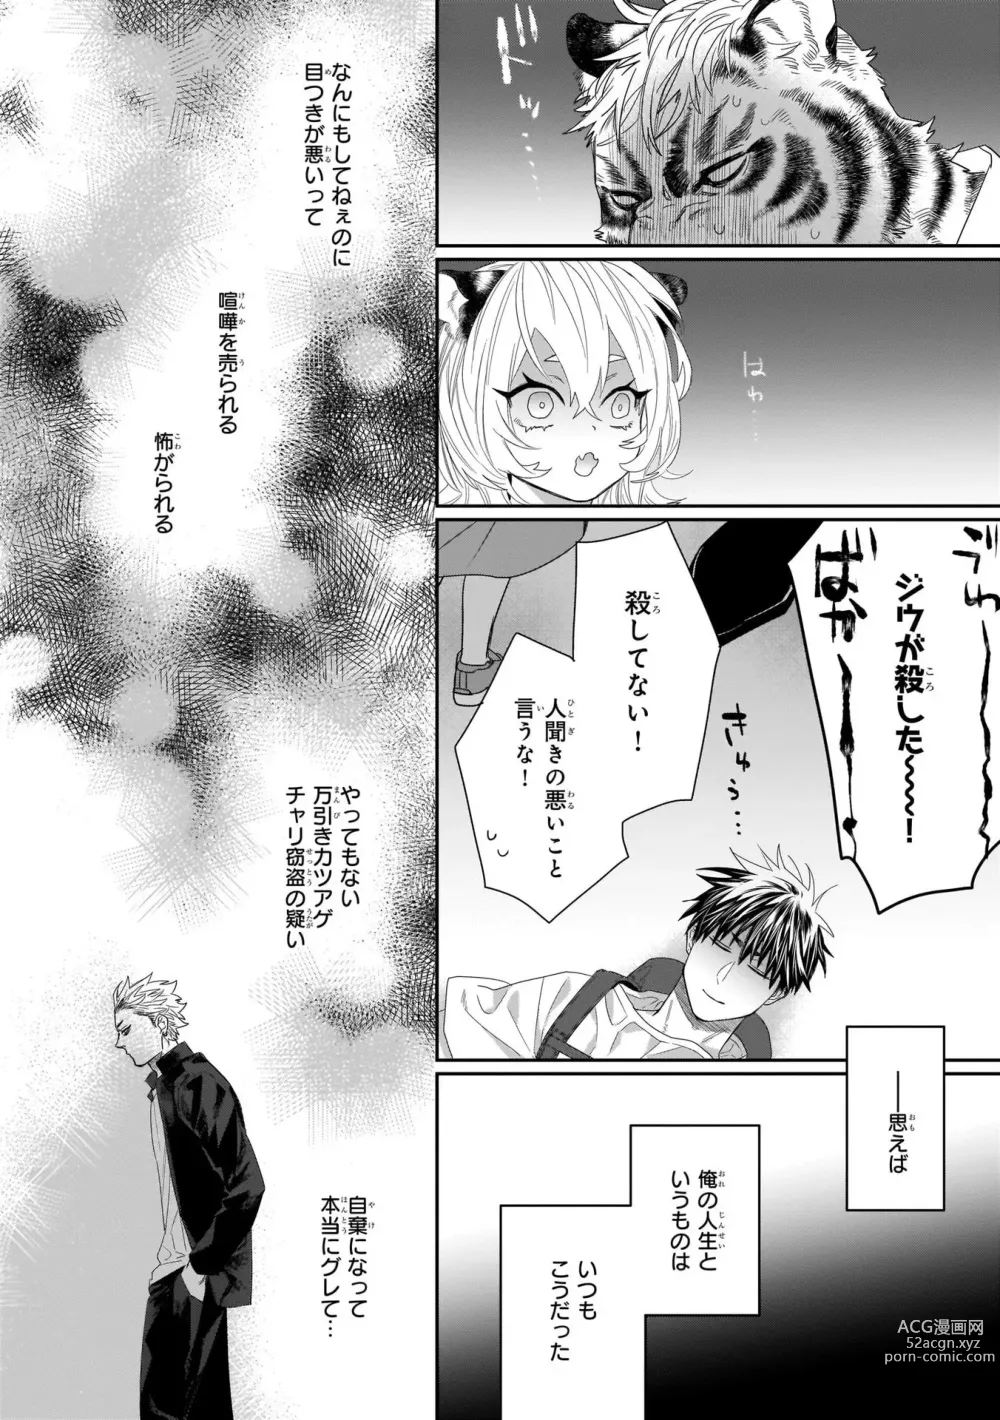 Page 10 of manga Torano Tantei Jimusho e Youkoso 1-5